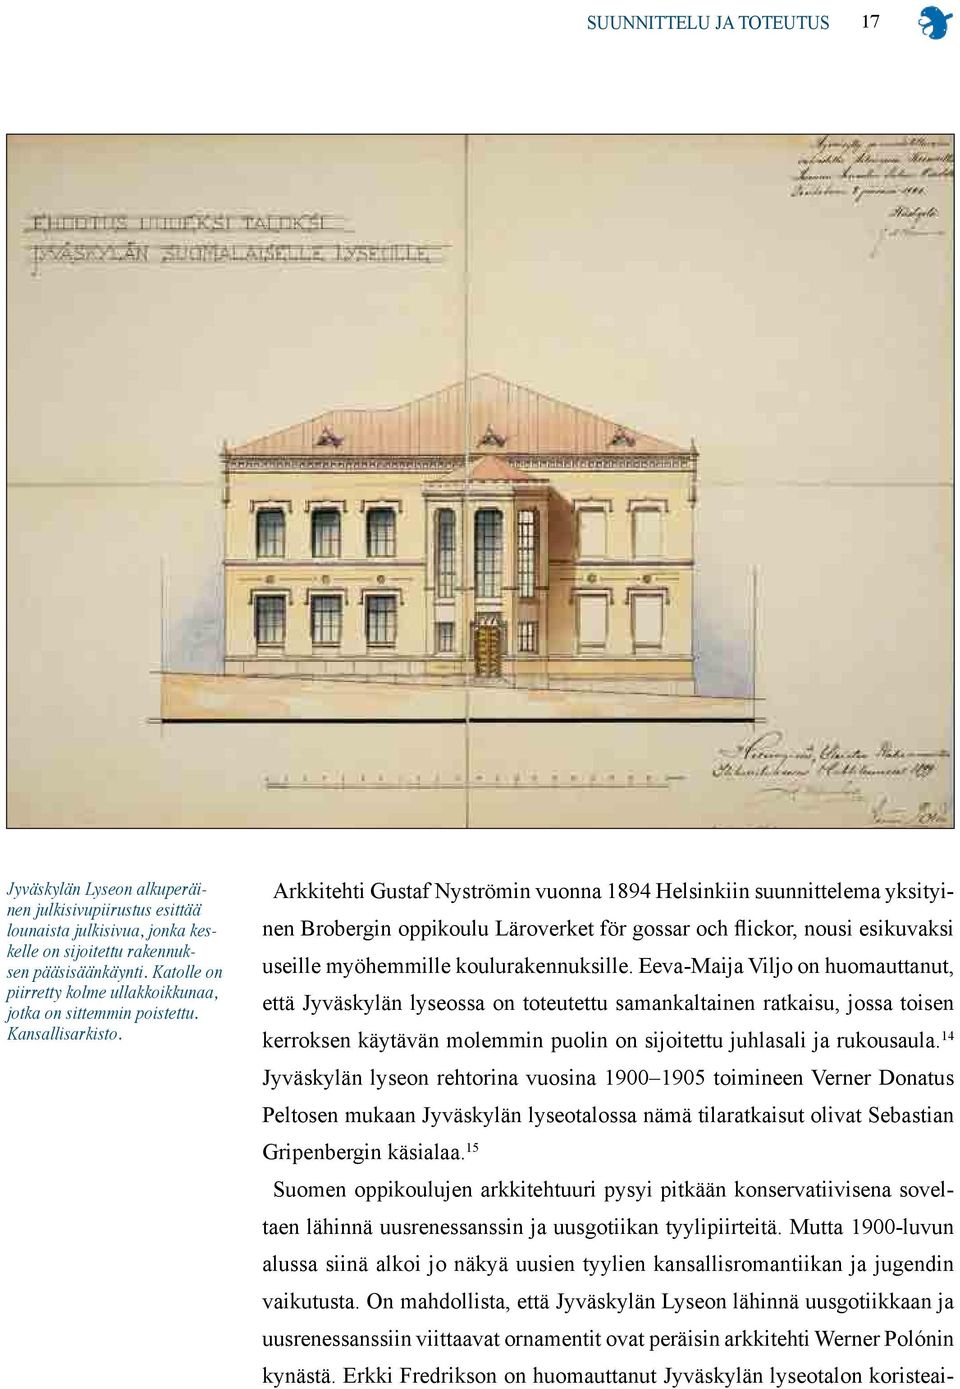 Arkkitehti Gustaf Nyströmin vuonna 1894 Helsinkiin suunnittelema yksityinen Brobergin oppikoulu Läroverket för gossar och flickor, nousi esikuvaksi useille myöhemmille koulurakennuksille.